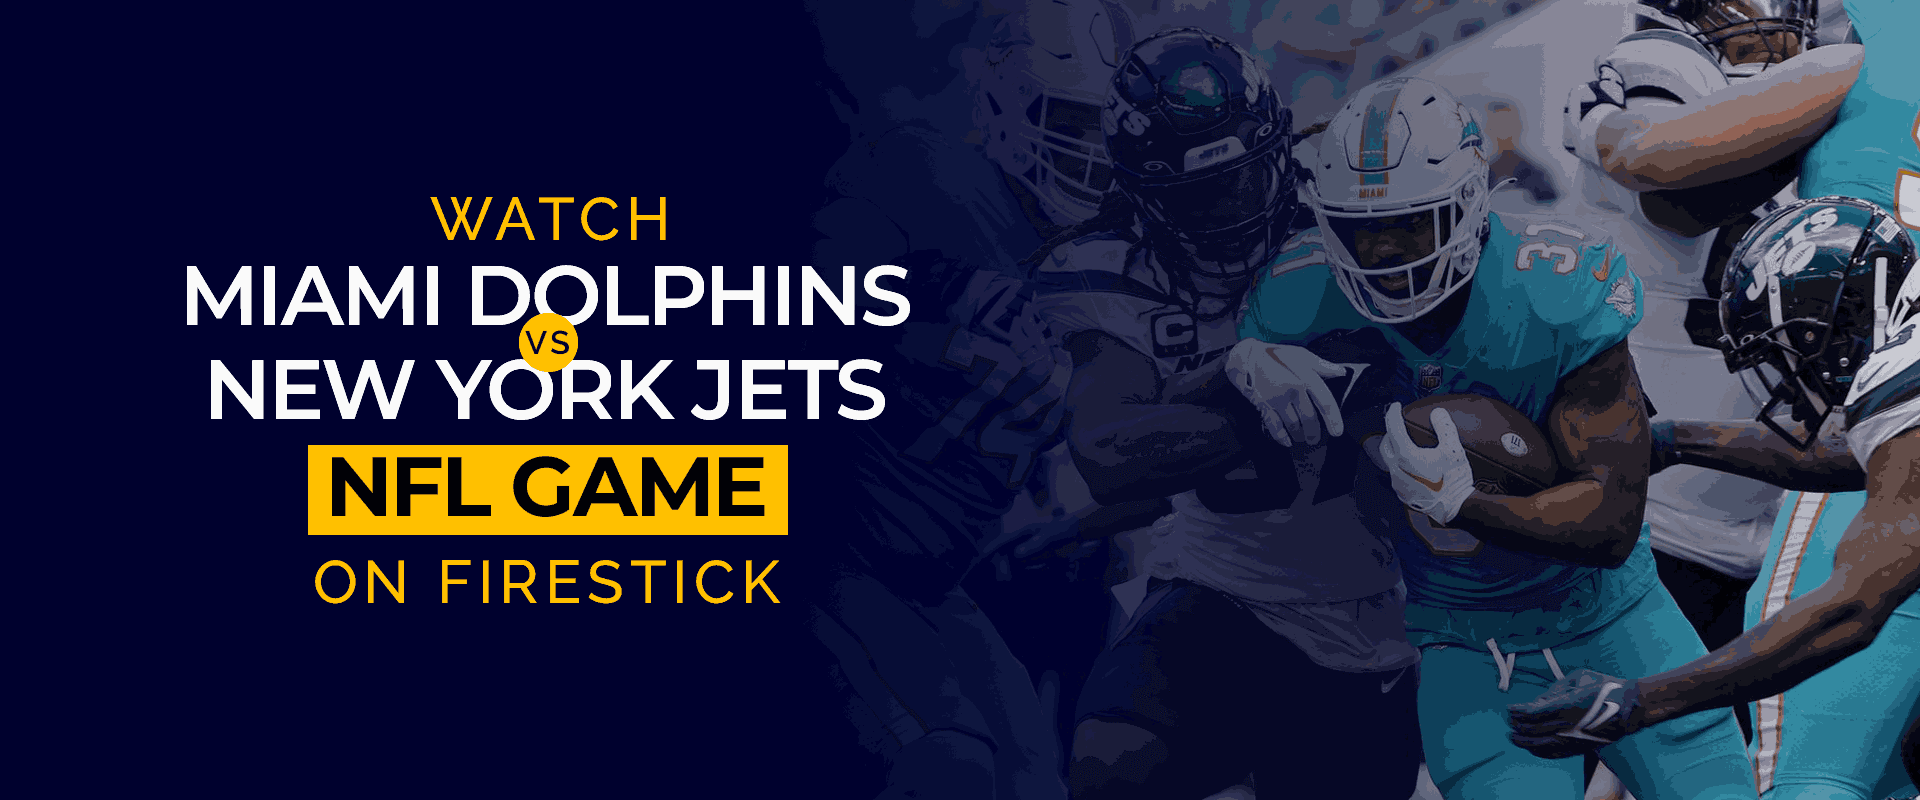 Regardez le match NFL Miami Dolphins contre New York Jets en direct sur Firestick